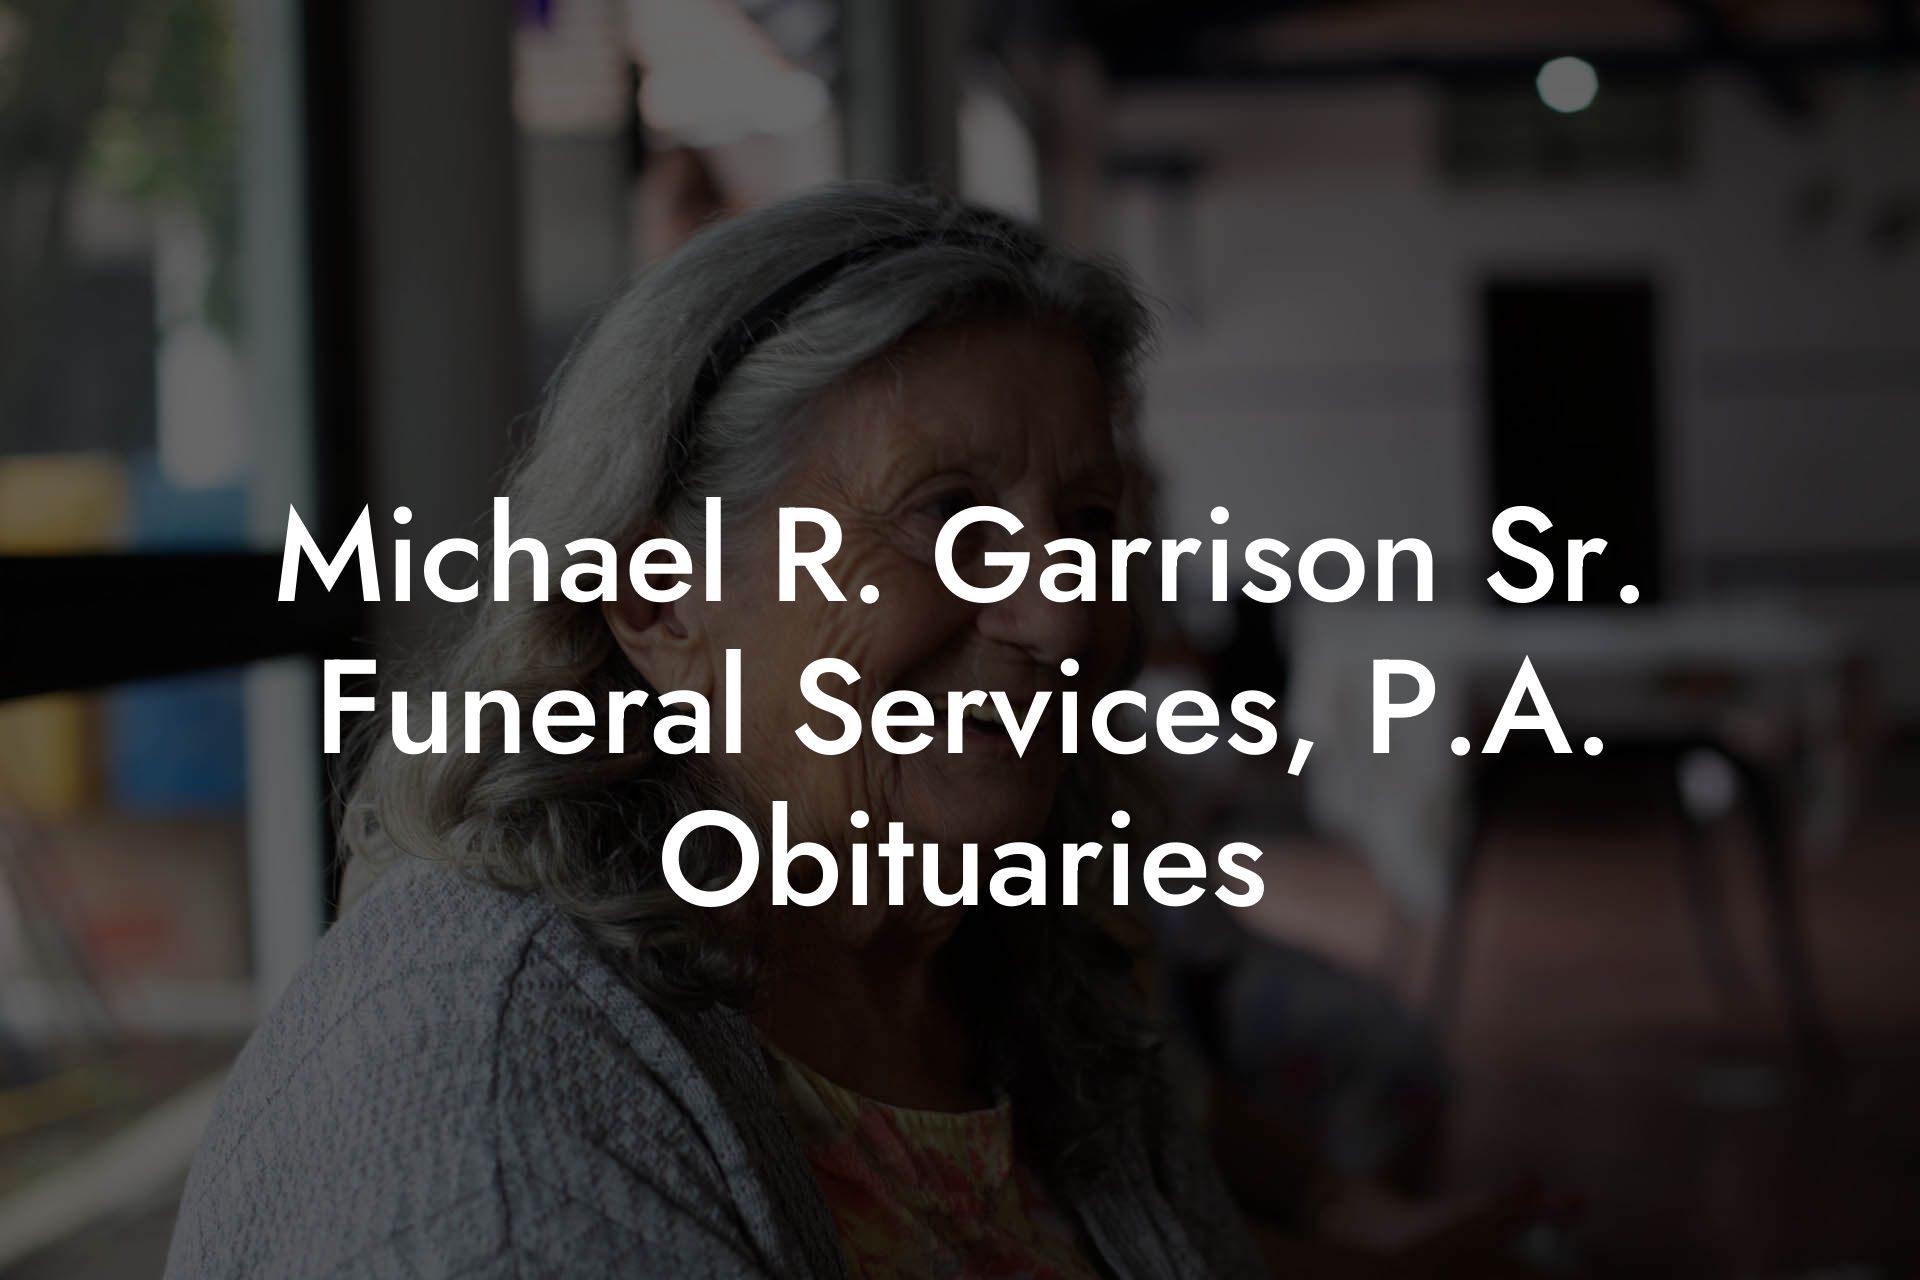 Michael R. Garrison Sr. Funeral Services, P.A. Obituaries